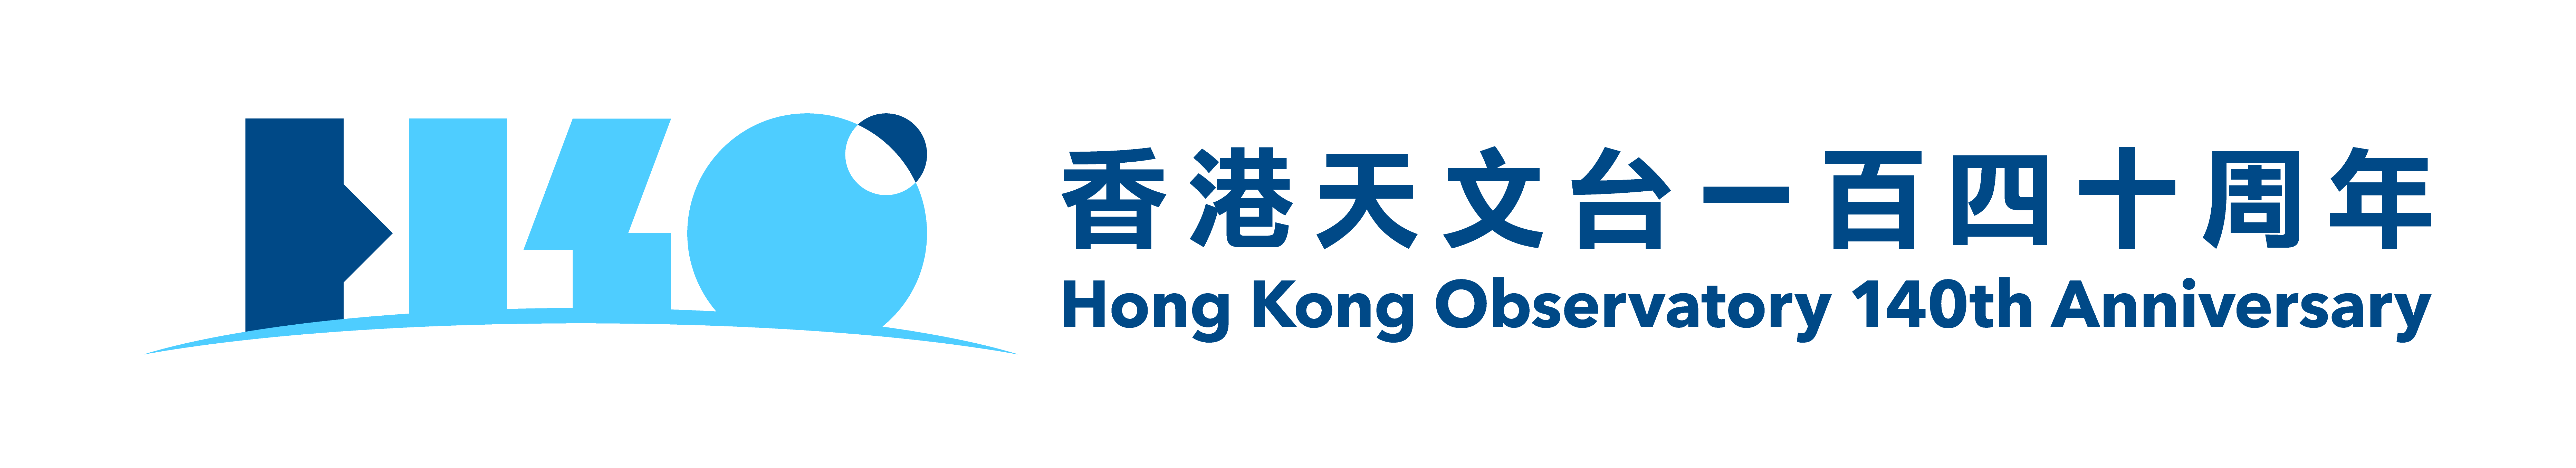 香港天文台140周年標誌。